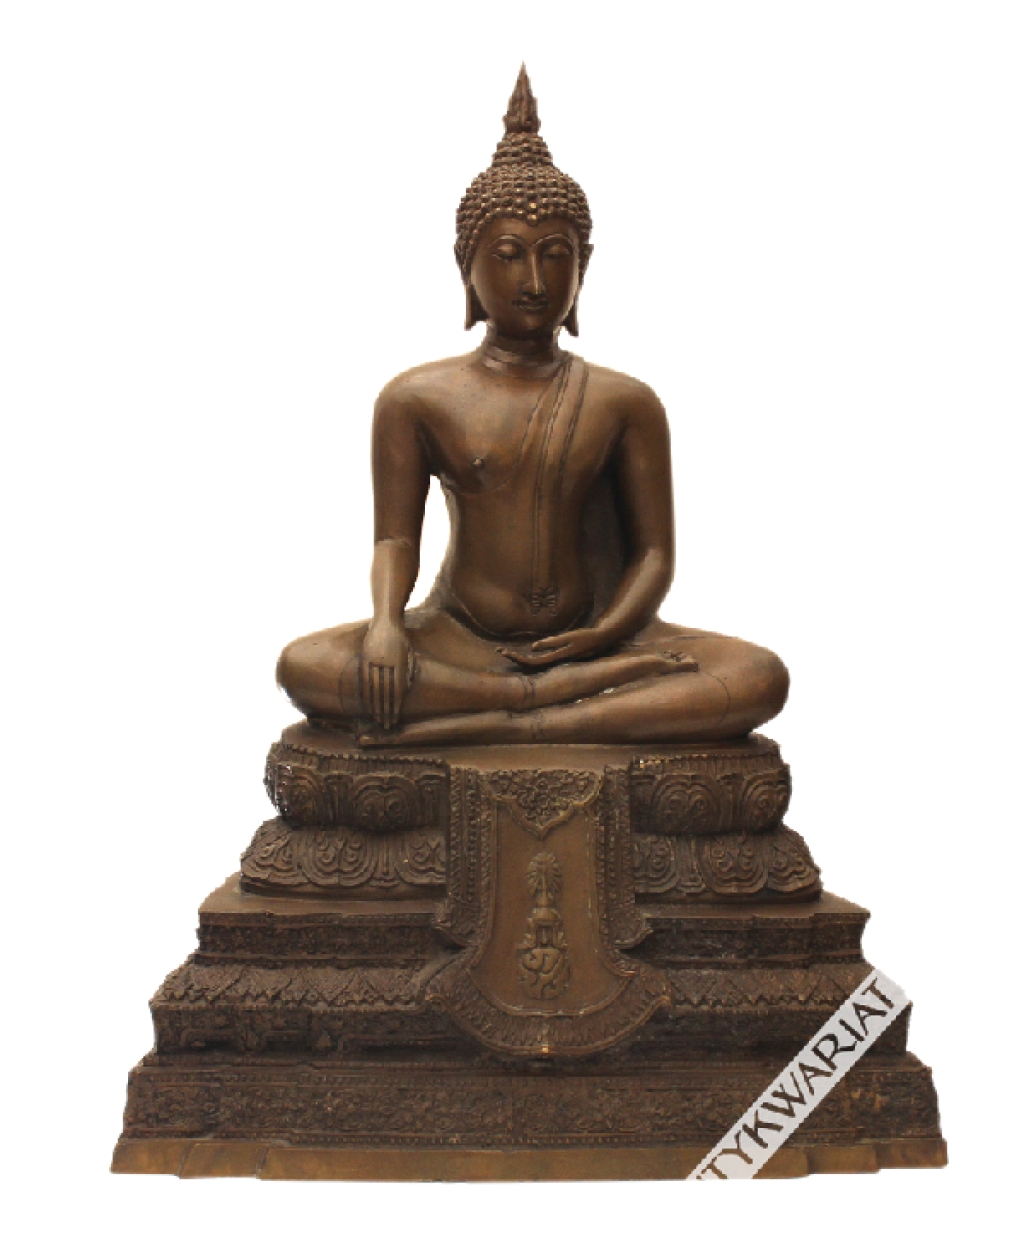 [Tajlandia, Indochiny, XIX-XX w.] Budda siedzący, tzw Rattanakosin